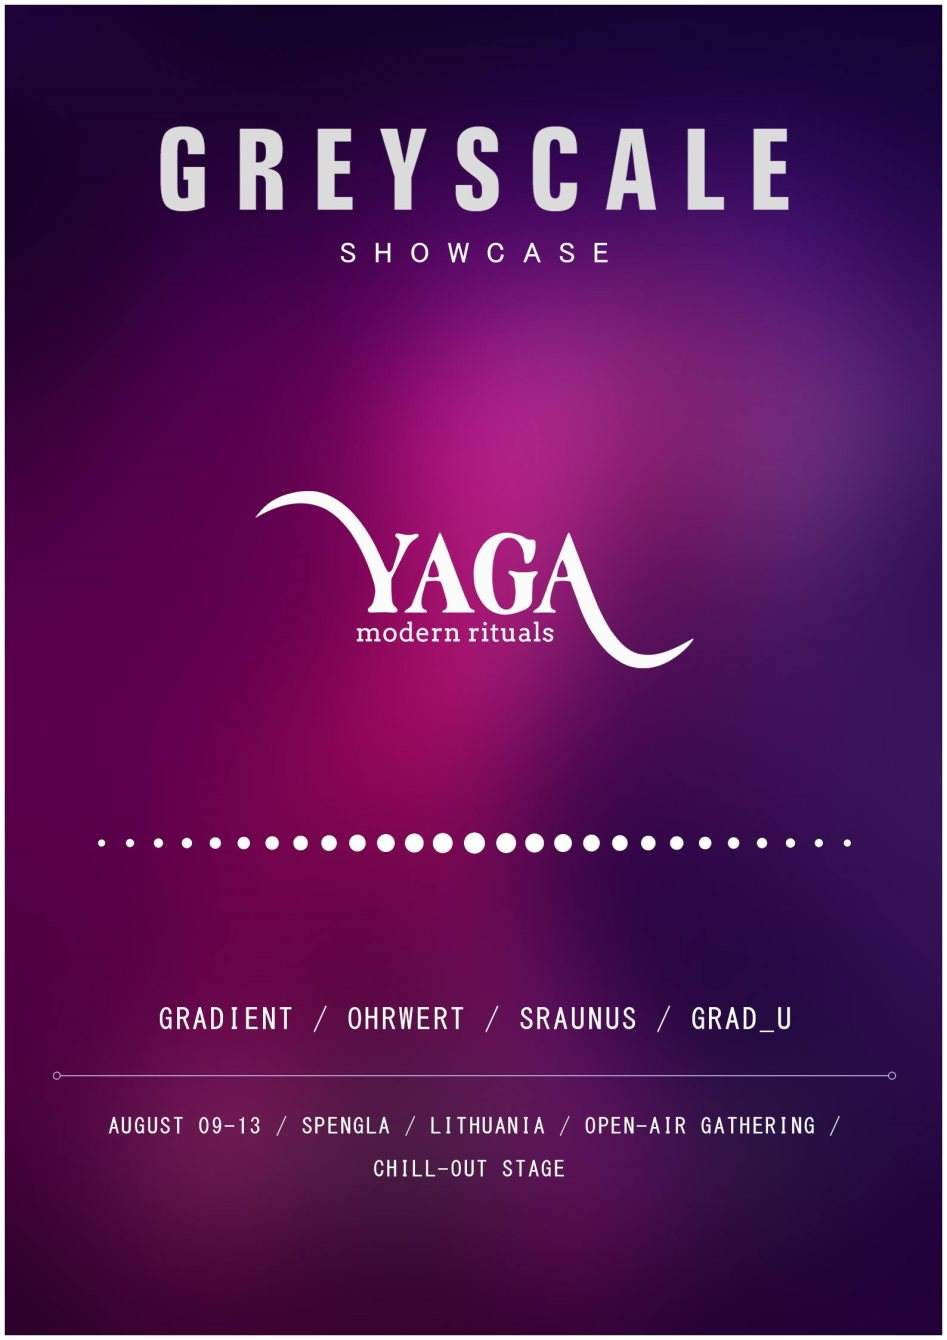 Greyscale Showcase at Yaga Gathering 2018 - Página frontal